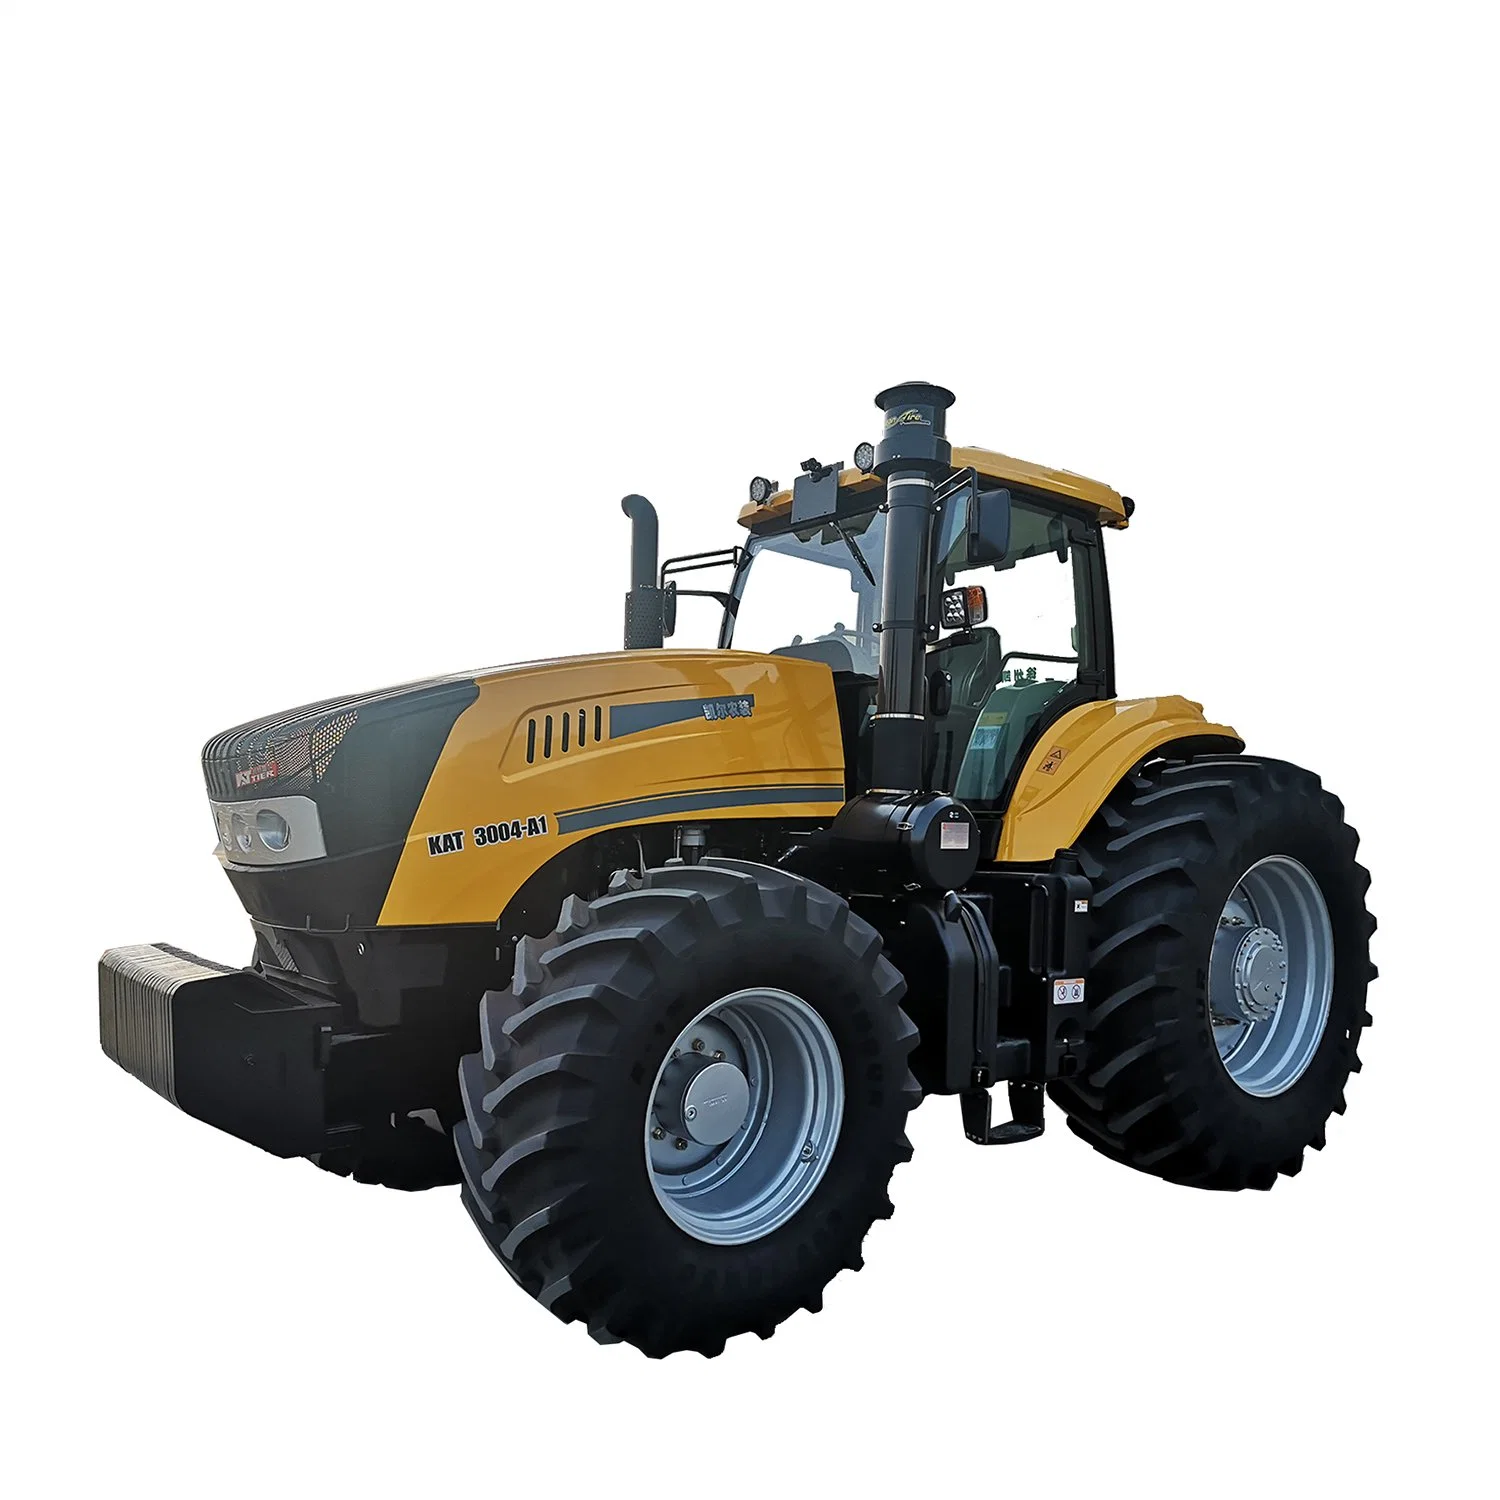 Kat3004-A1 Grands tracteurs chinois 300HP Tracteurs de machines agricoles